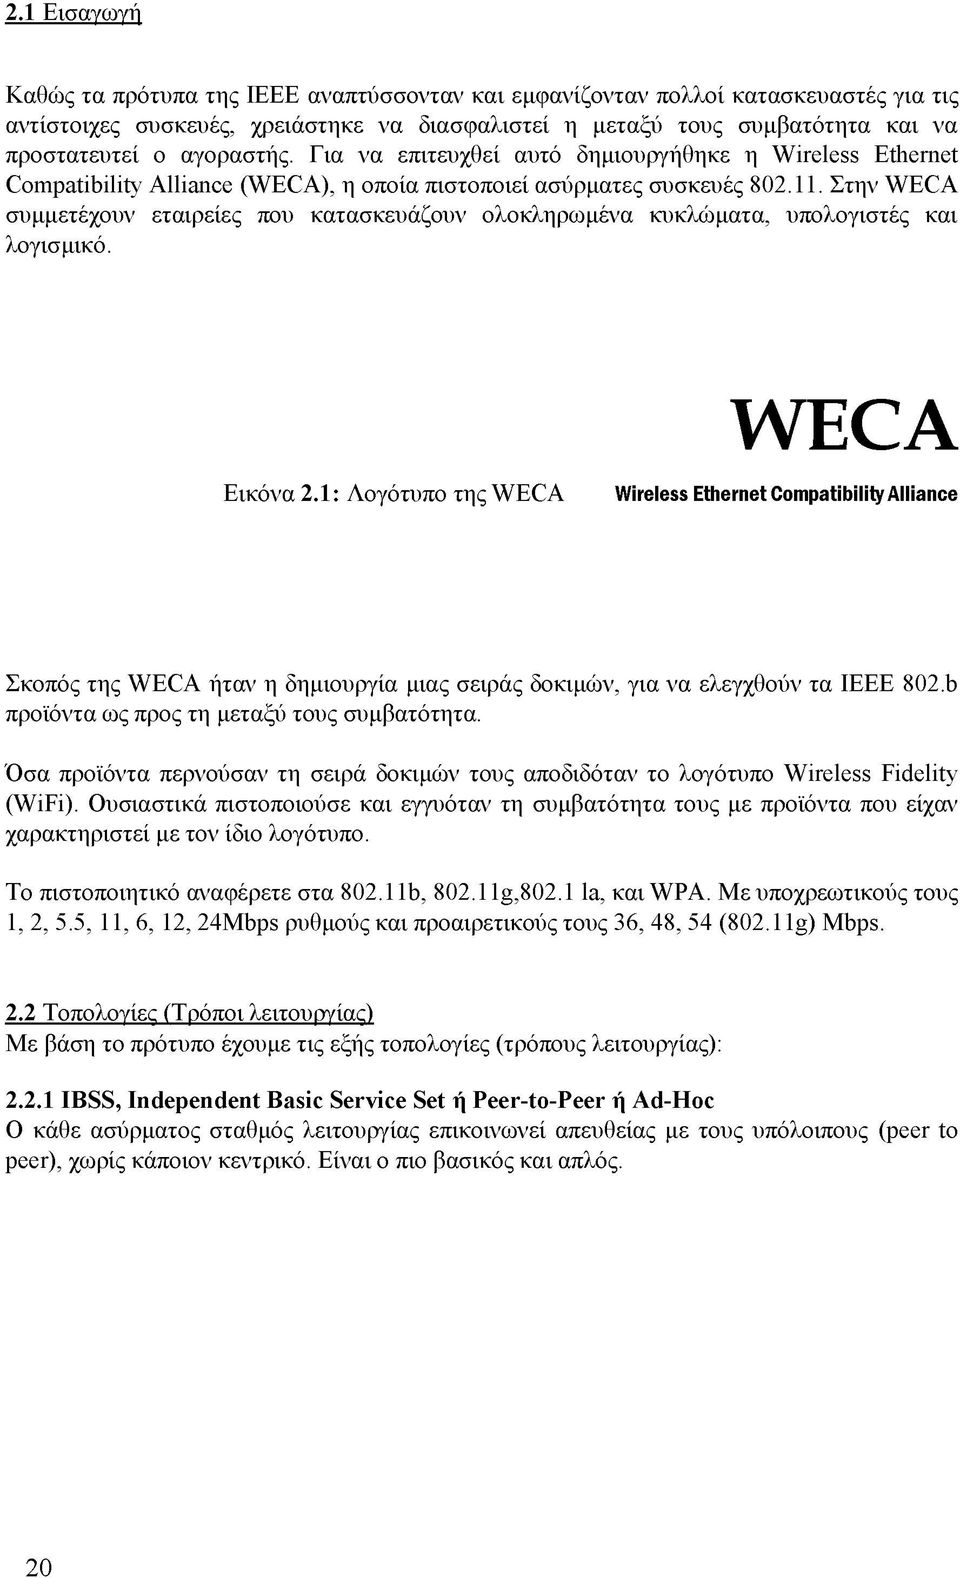 Στην WECA συμμετέχουν εταιρείες που κατασκευάζουν ολοκληρωμένα κυκλώματα, υπολογιστές και λογισμικό. Εικόνα 2.